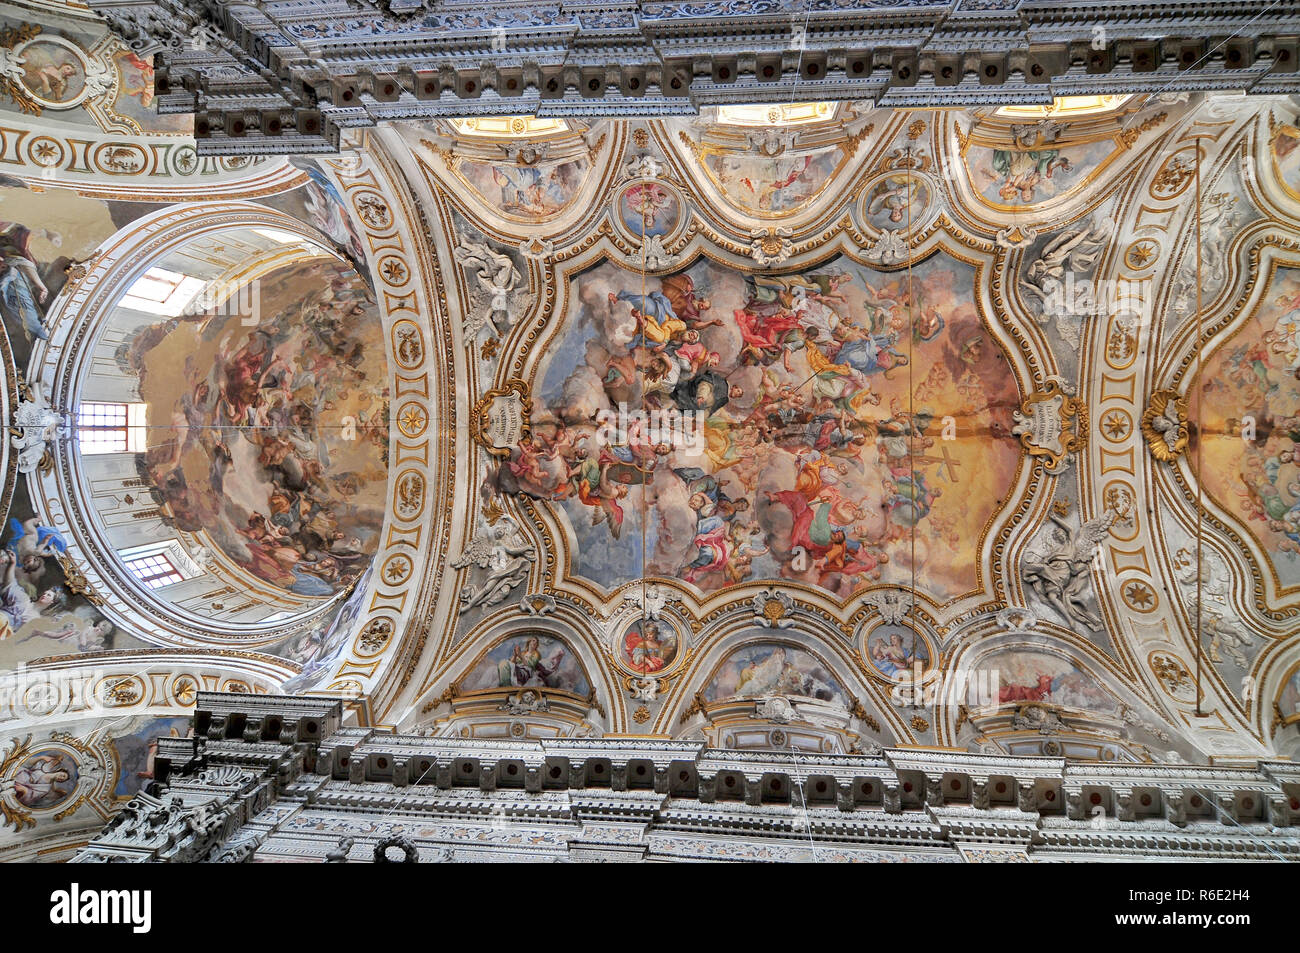 Fresco Ii Trionfo Di Santa Caterina By Filippo Randazzo From Ceiling Of Baroque Church Chiesa Di Santa Caterina In Palermo Italy Stock Photo